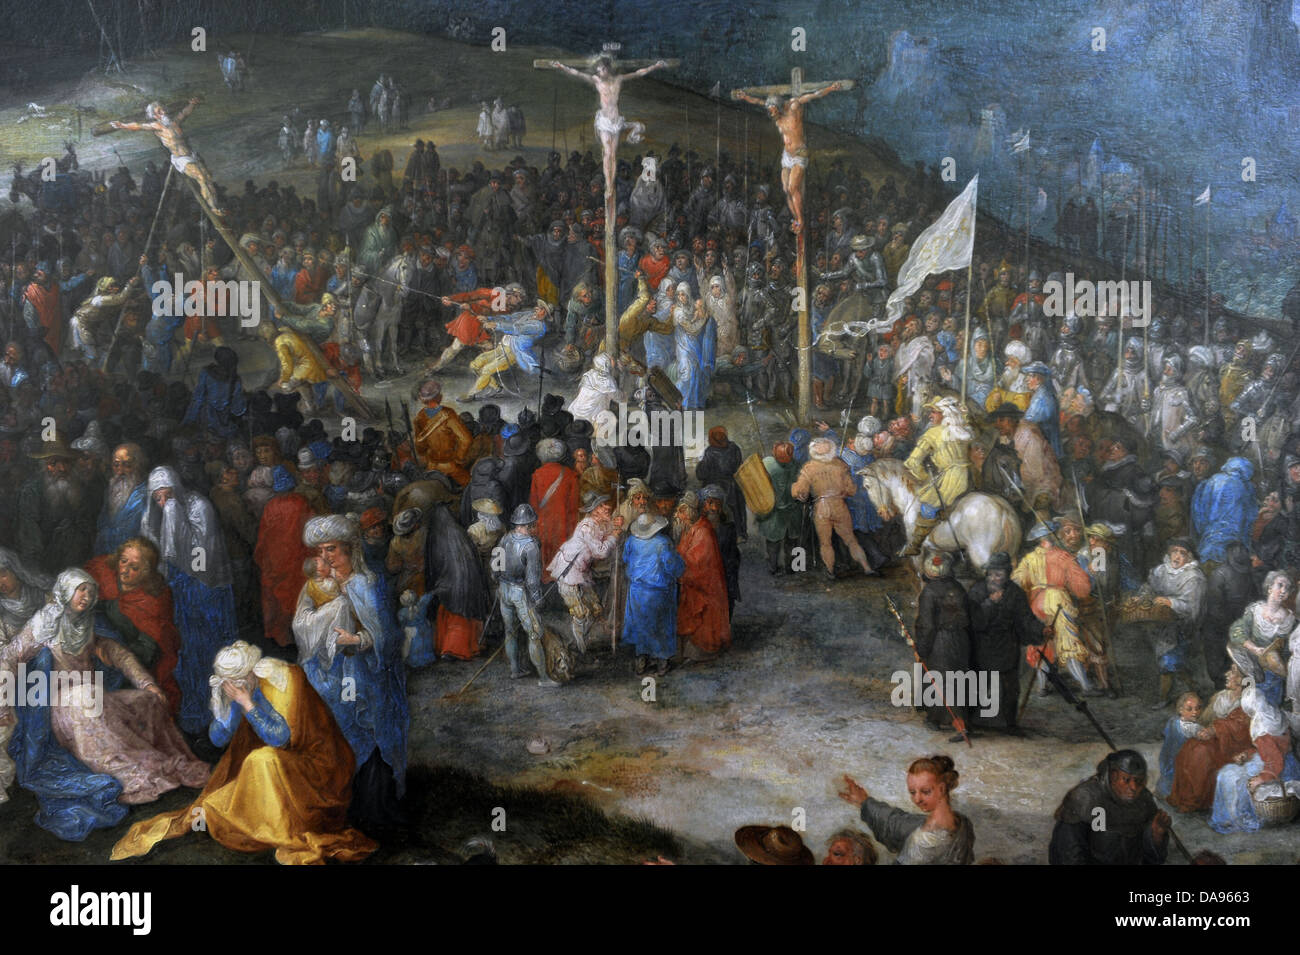 Jan Brueghel l'ancien (1568-1625). Peintre flamand, la crucifixion du Christ, 1594. Détail. L'Alte Pinakothek. Munich. L'Allemagne. Banque D'Images